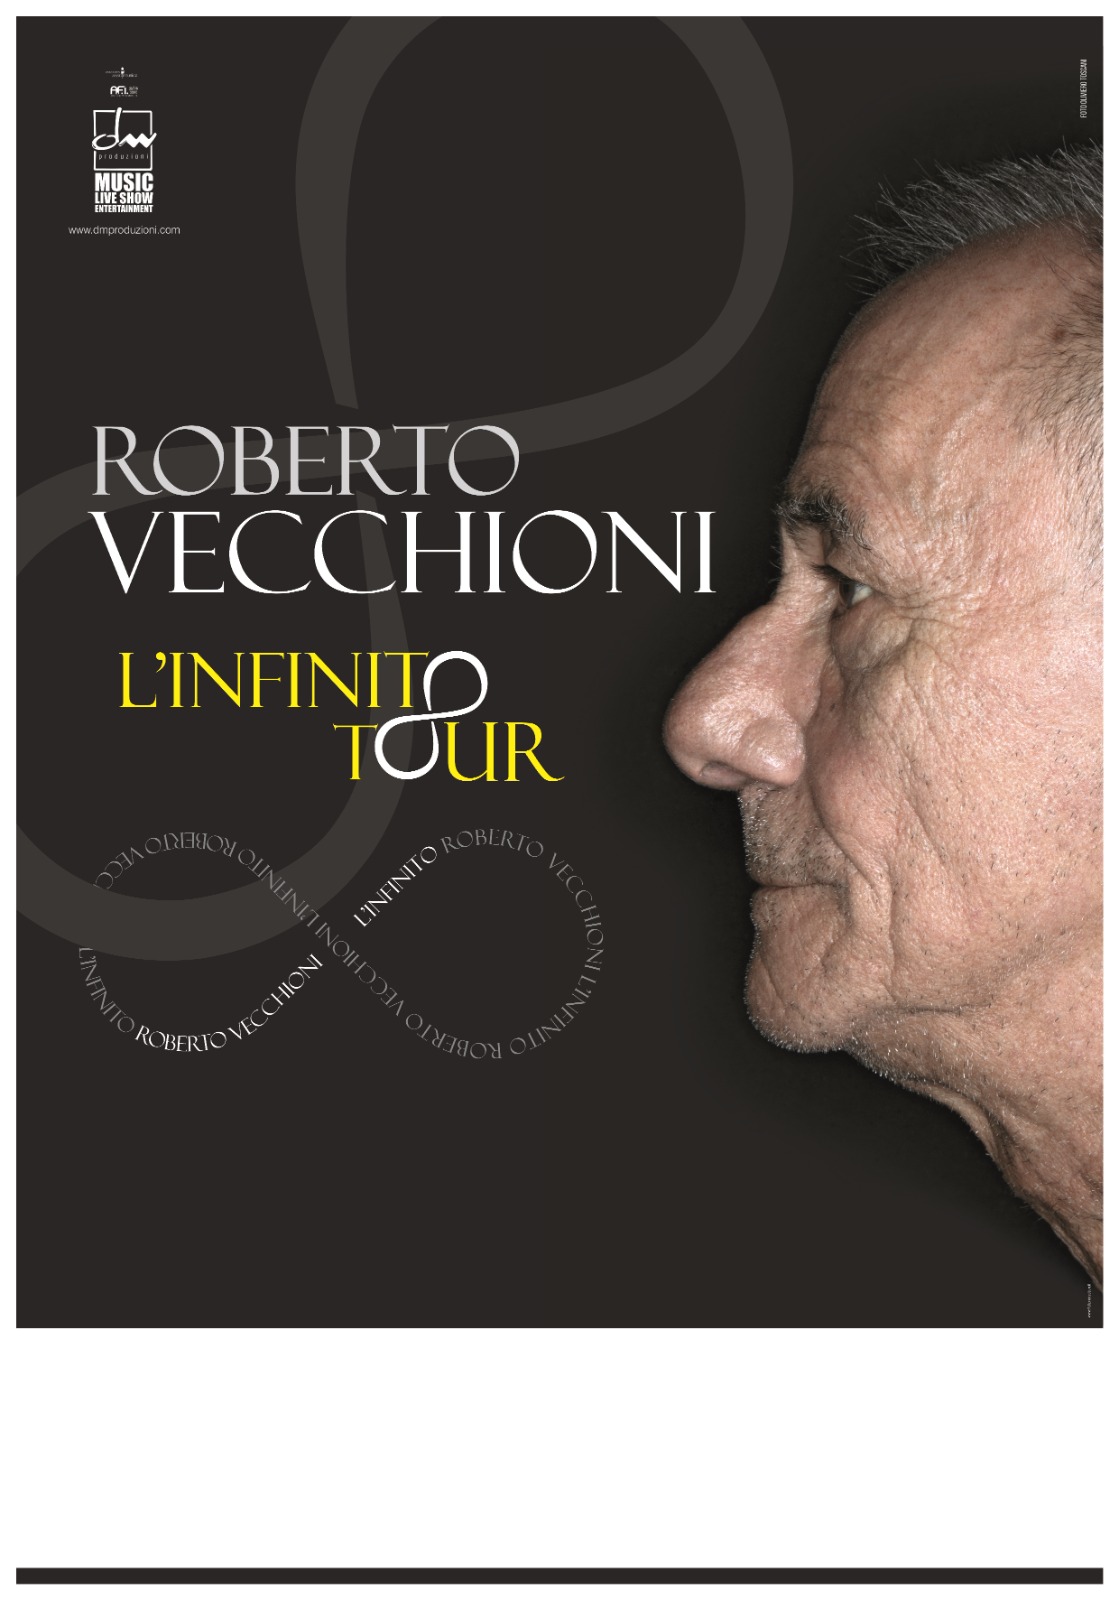 Capaccio Paestum: Roberto Vecchioni in concerto a chiusura cartellone eventi estivi